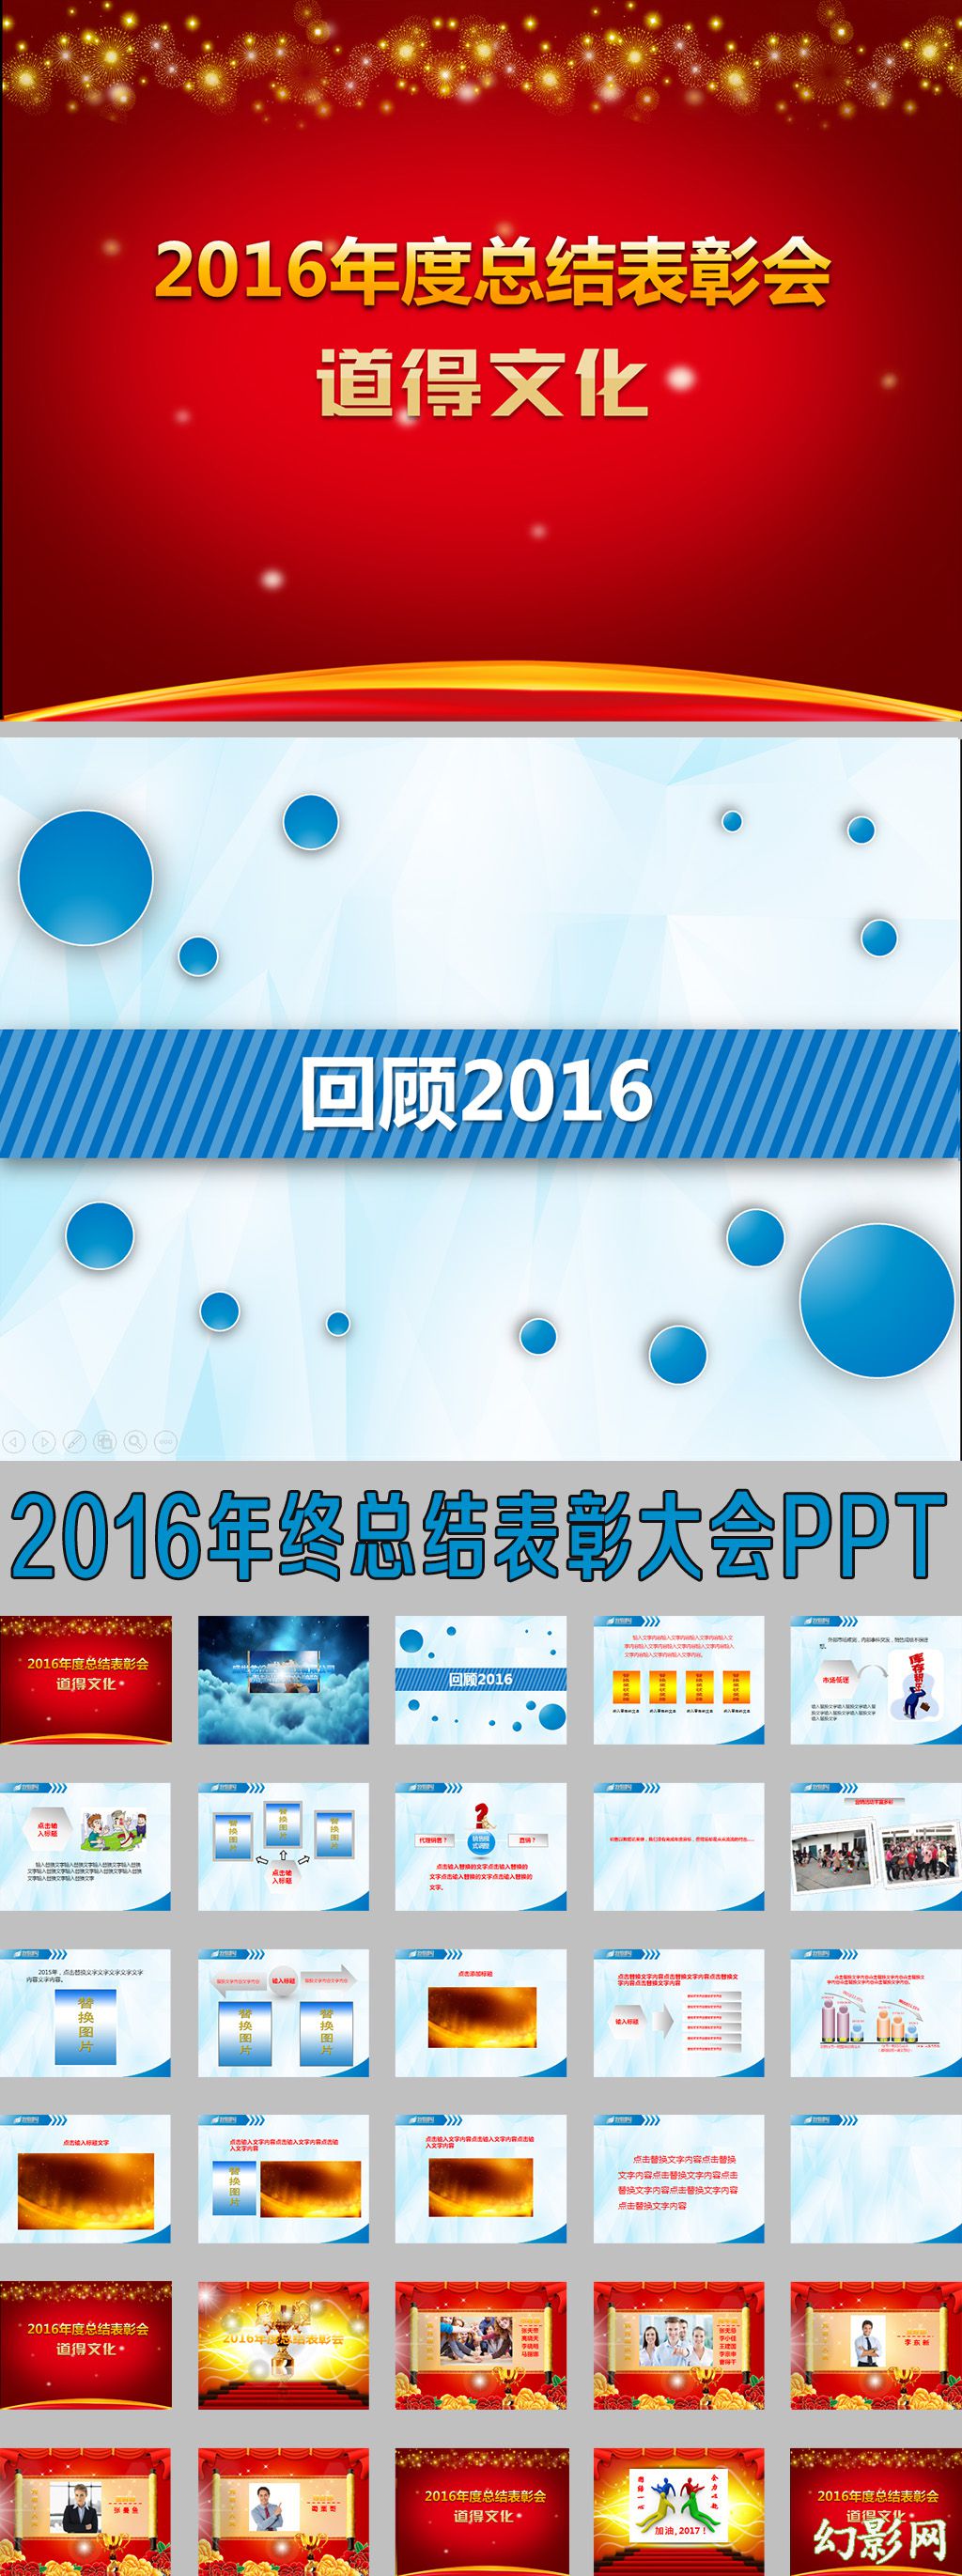 流程完整的2016年终总结表彰大会PPT